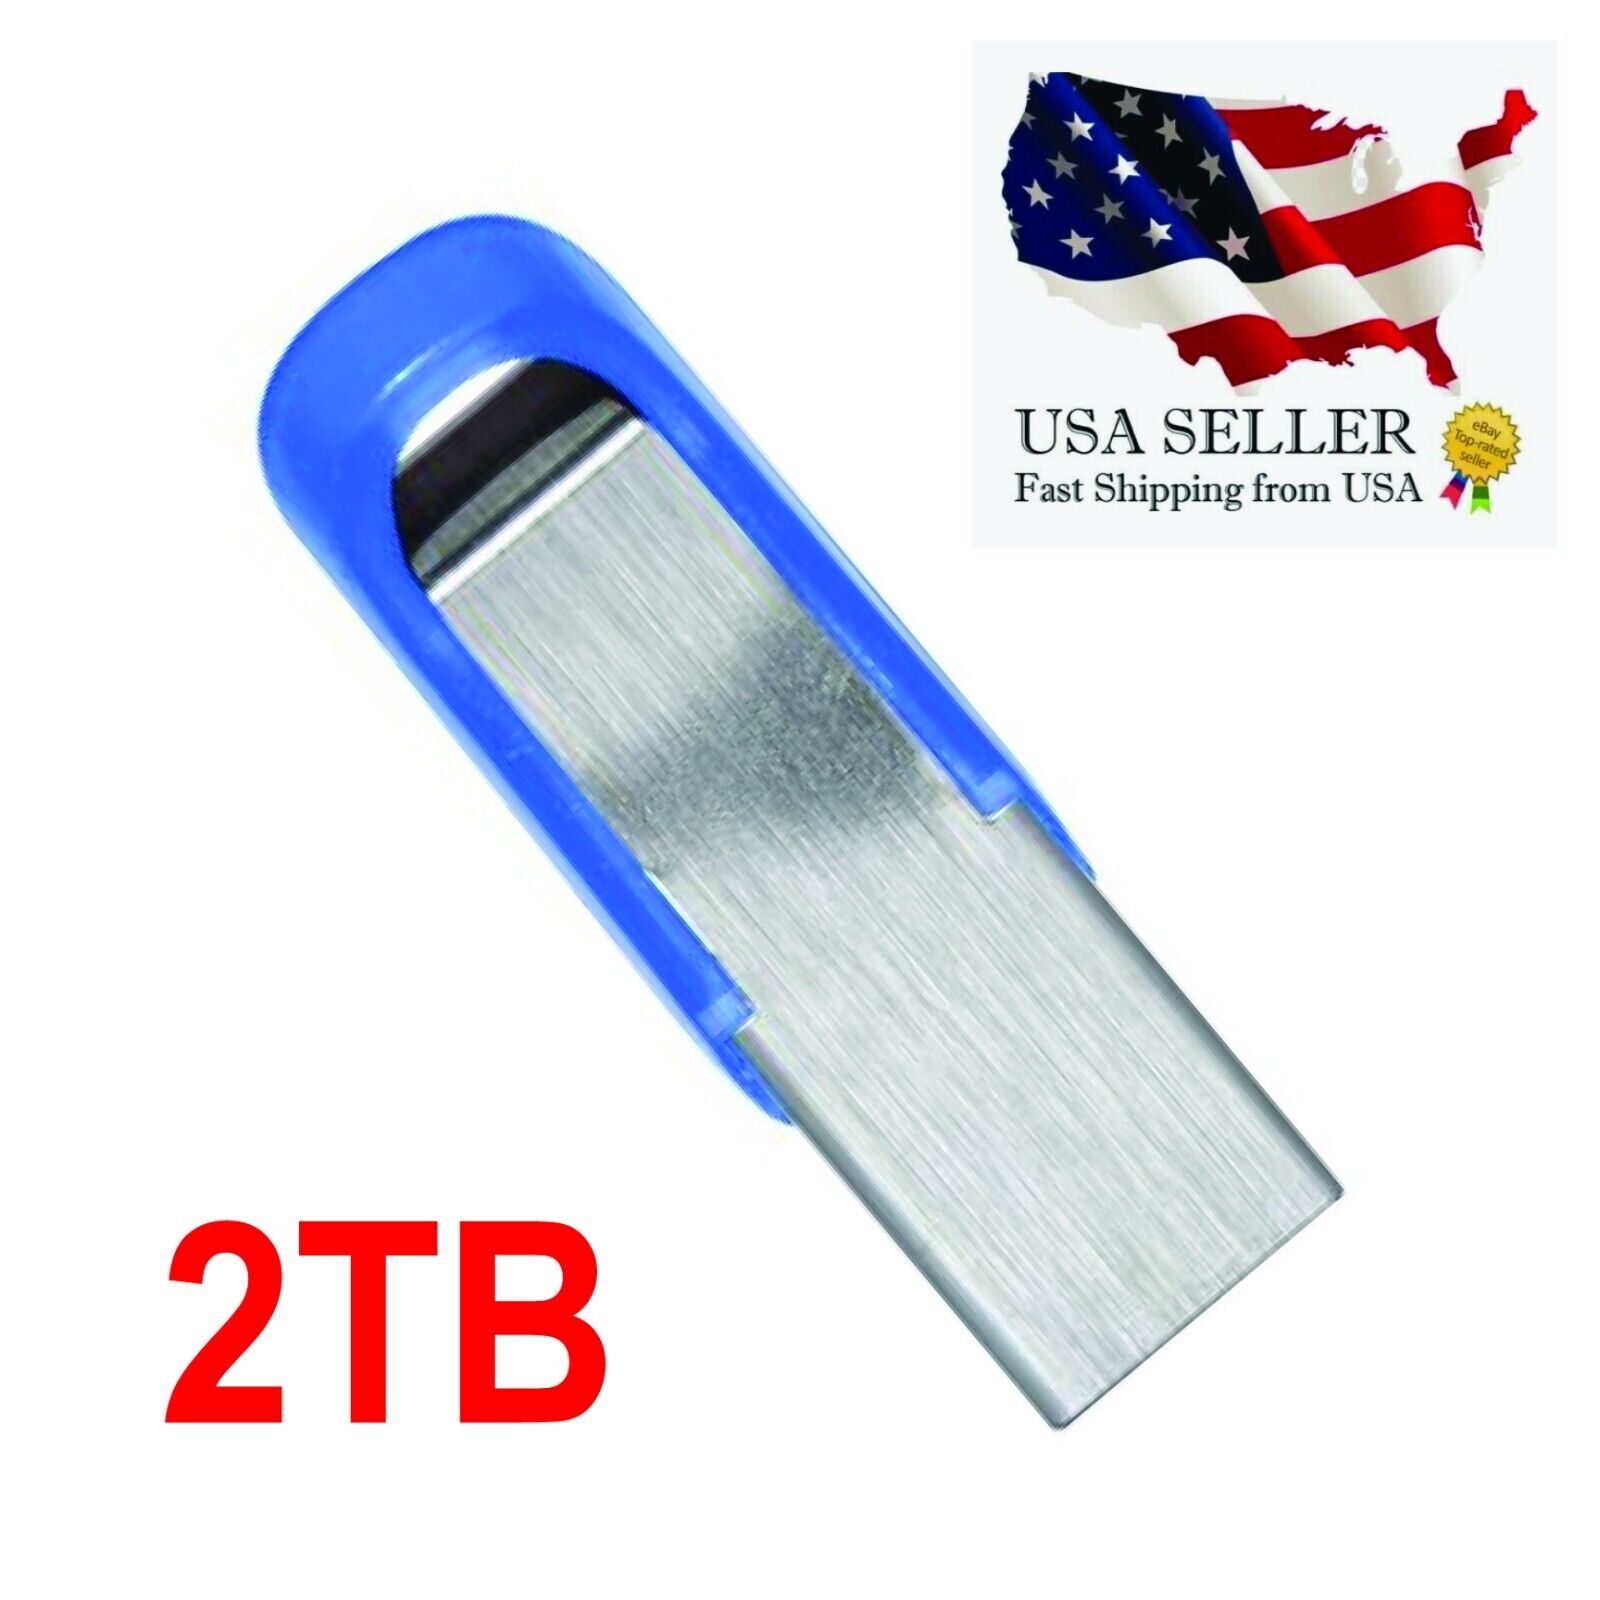 UDisk Super LB-Mini Metal USB Flash Drives 2TB USB3.0 Disk Memory Portable Blue